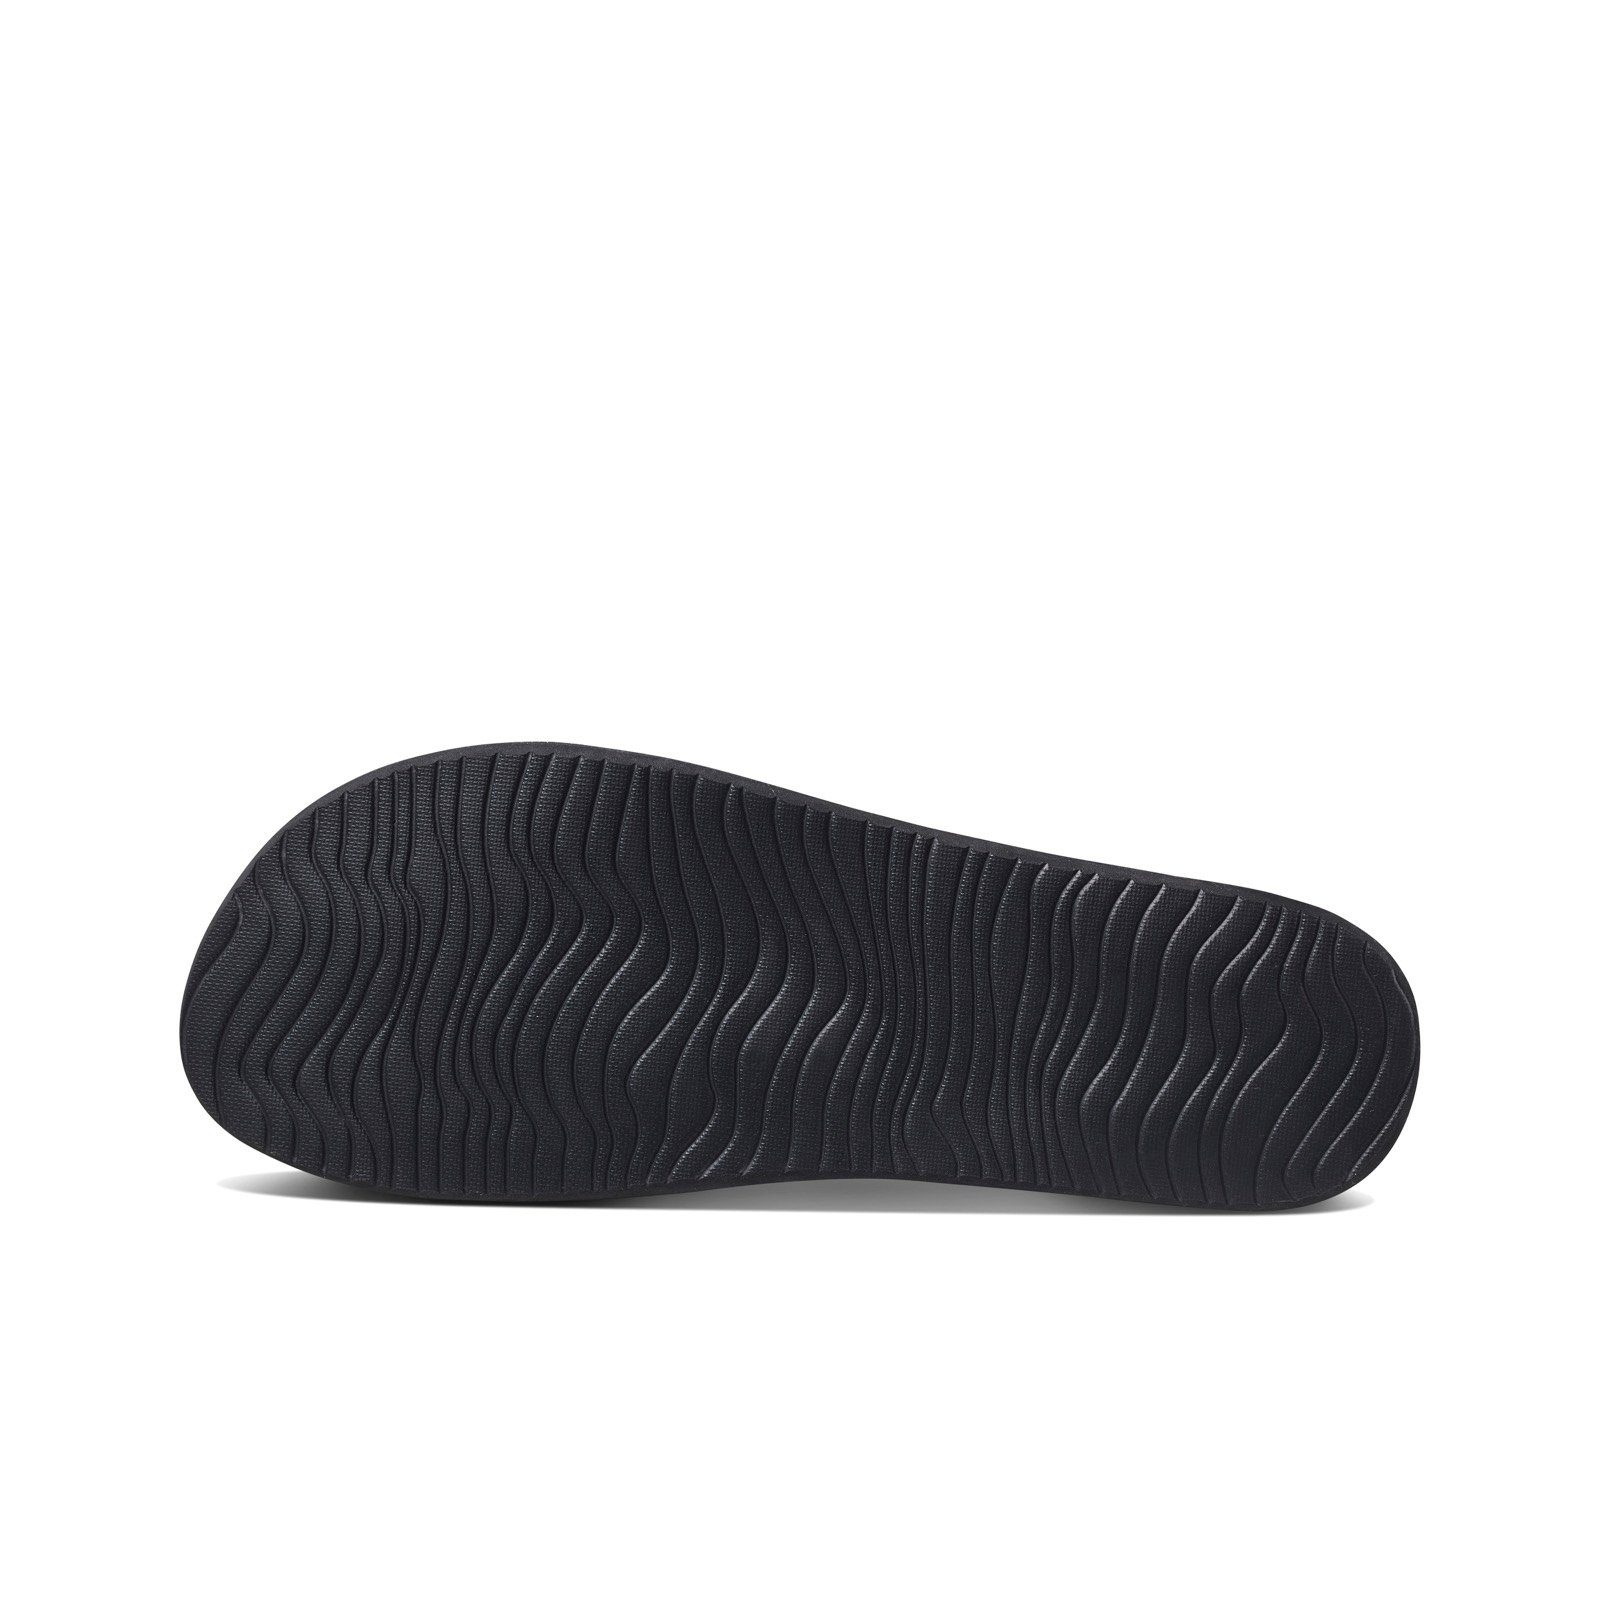 EVA (1-tlg) Fußbett Court geformtes Anatomisch Reef Black Zehentrenner Sandale leichtes Fußbett, Zehentrenner Cushion